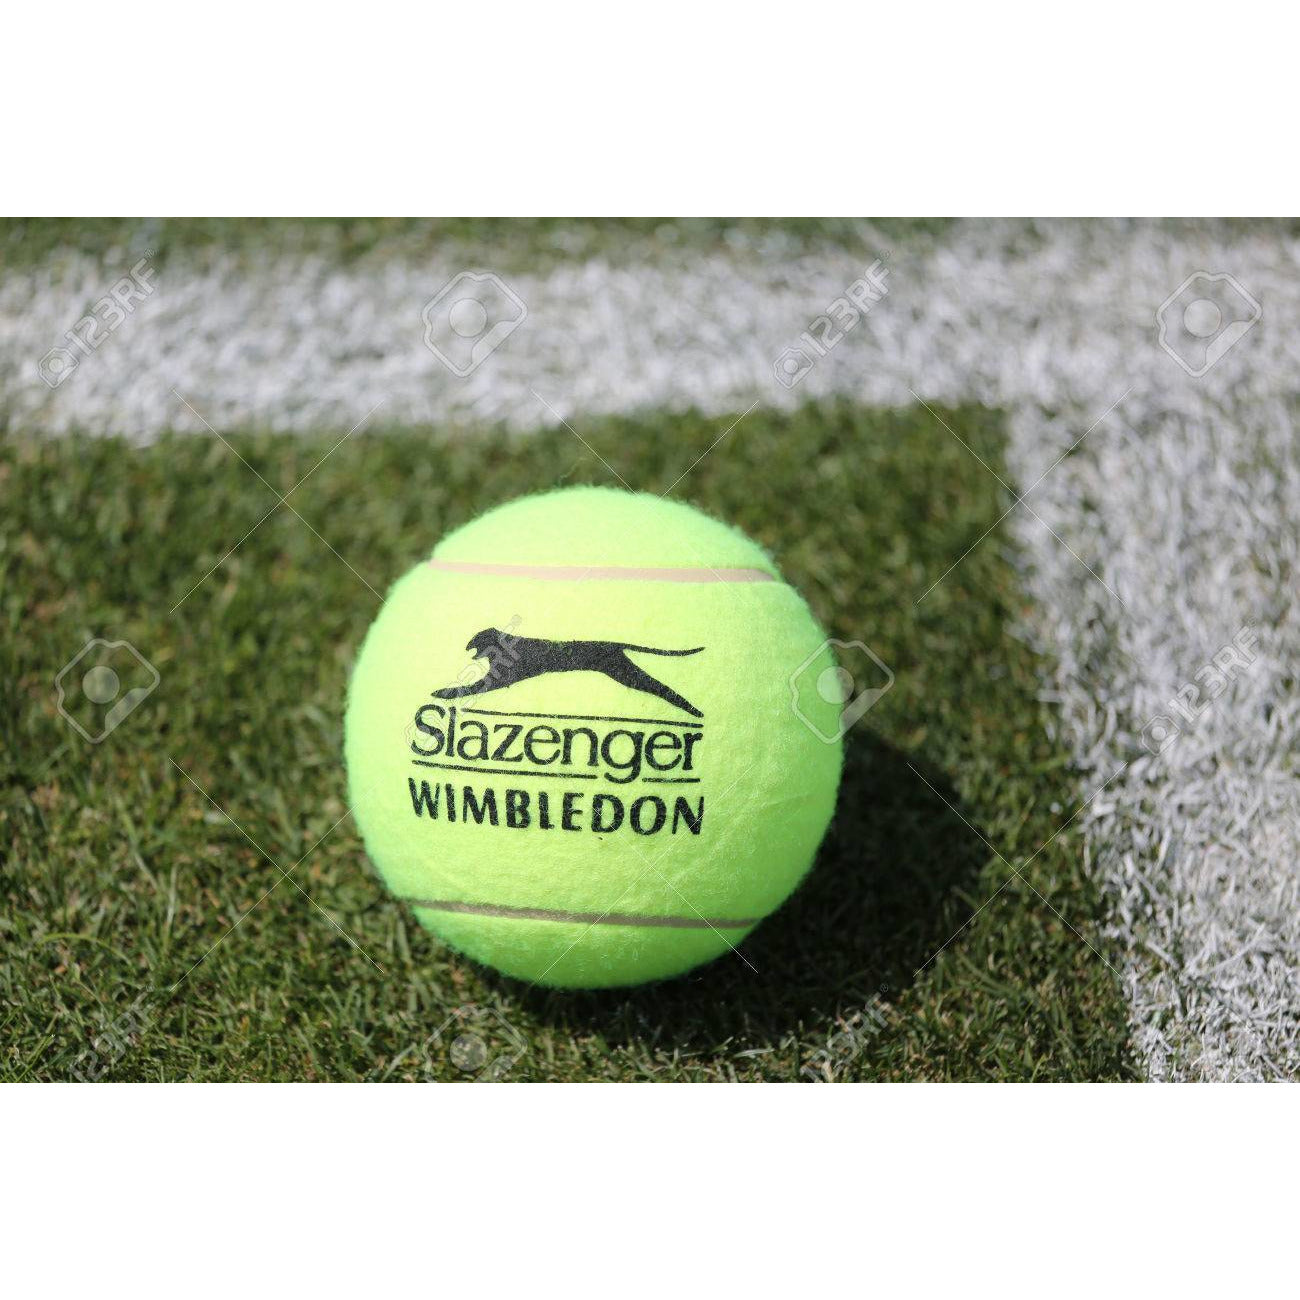 Slazenger Wimbledon 3 Ball